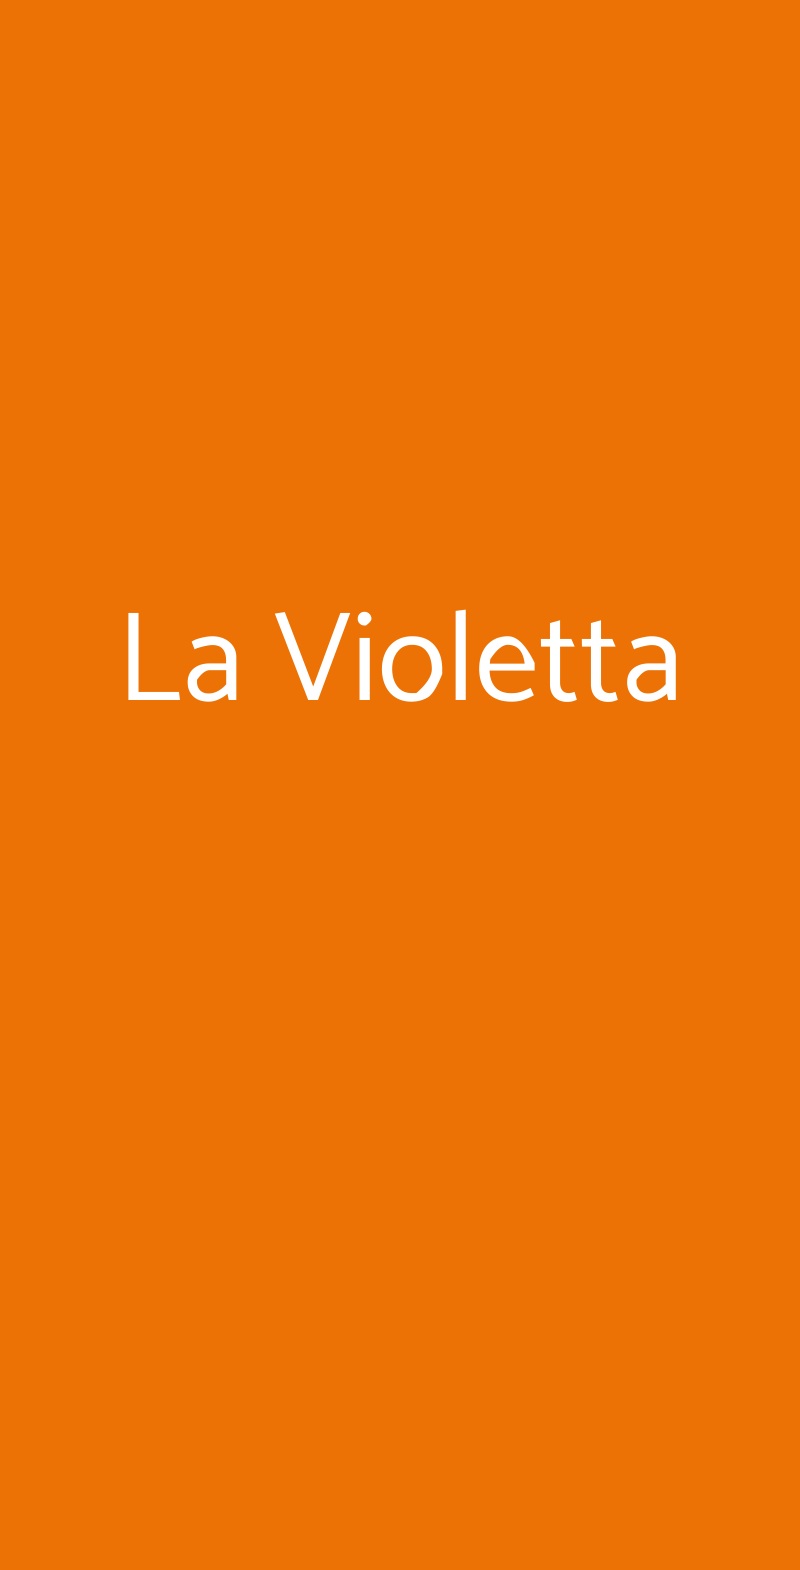 La Violetta, Calamandrana